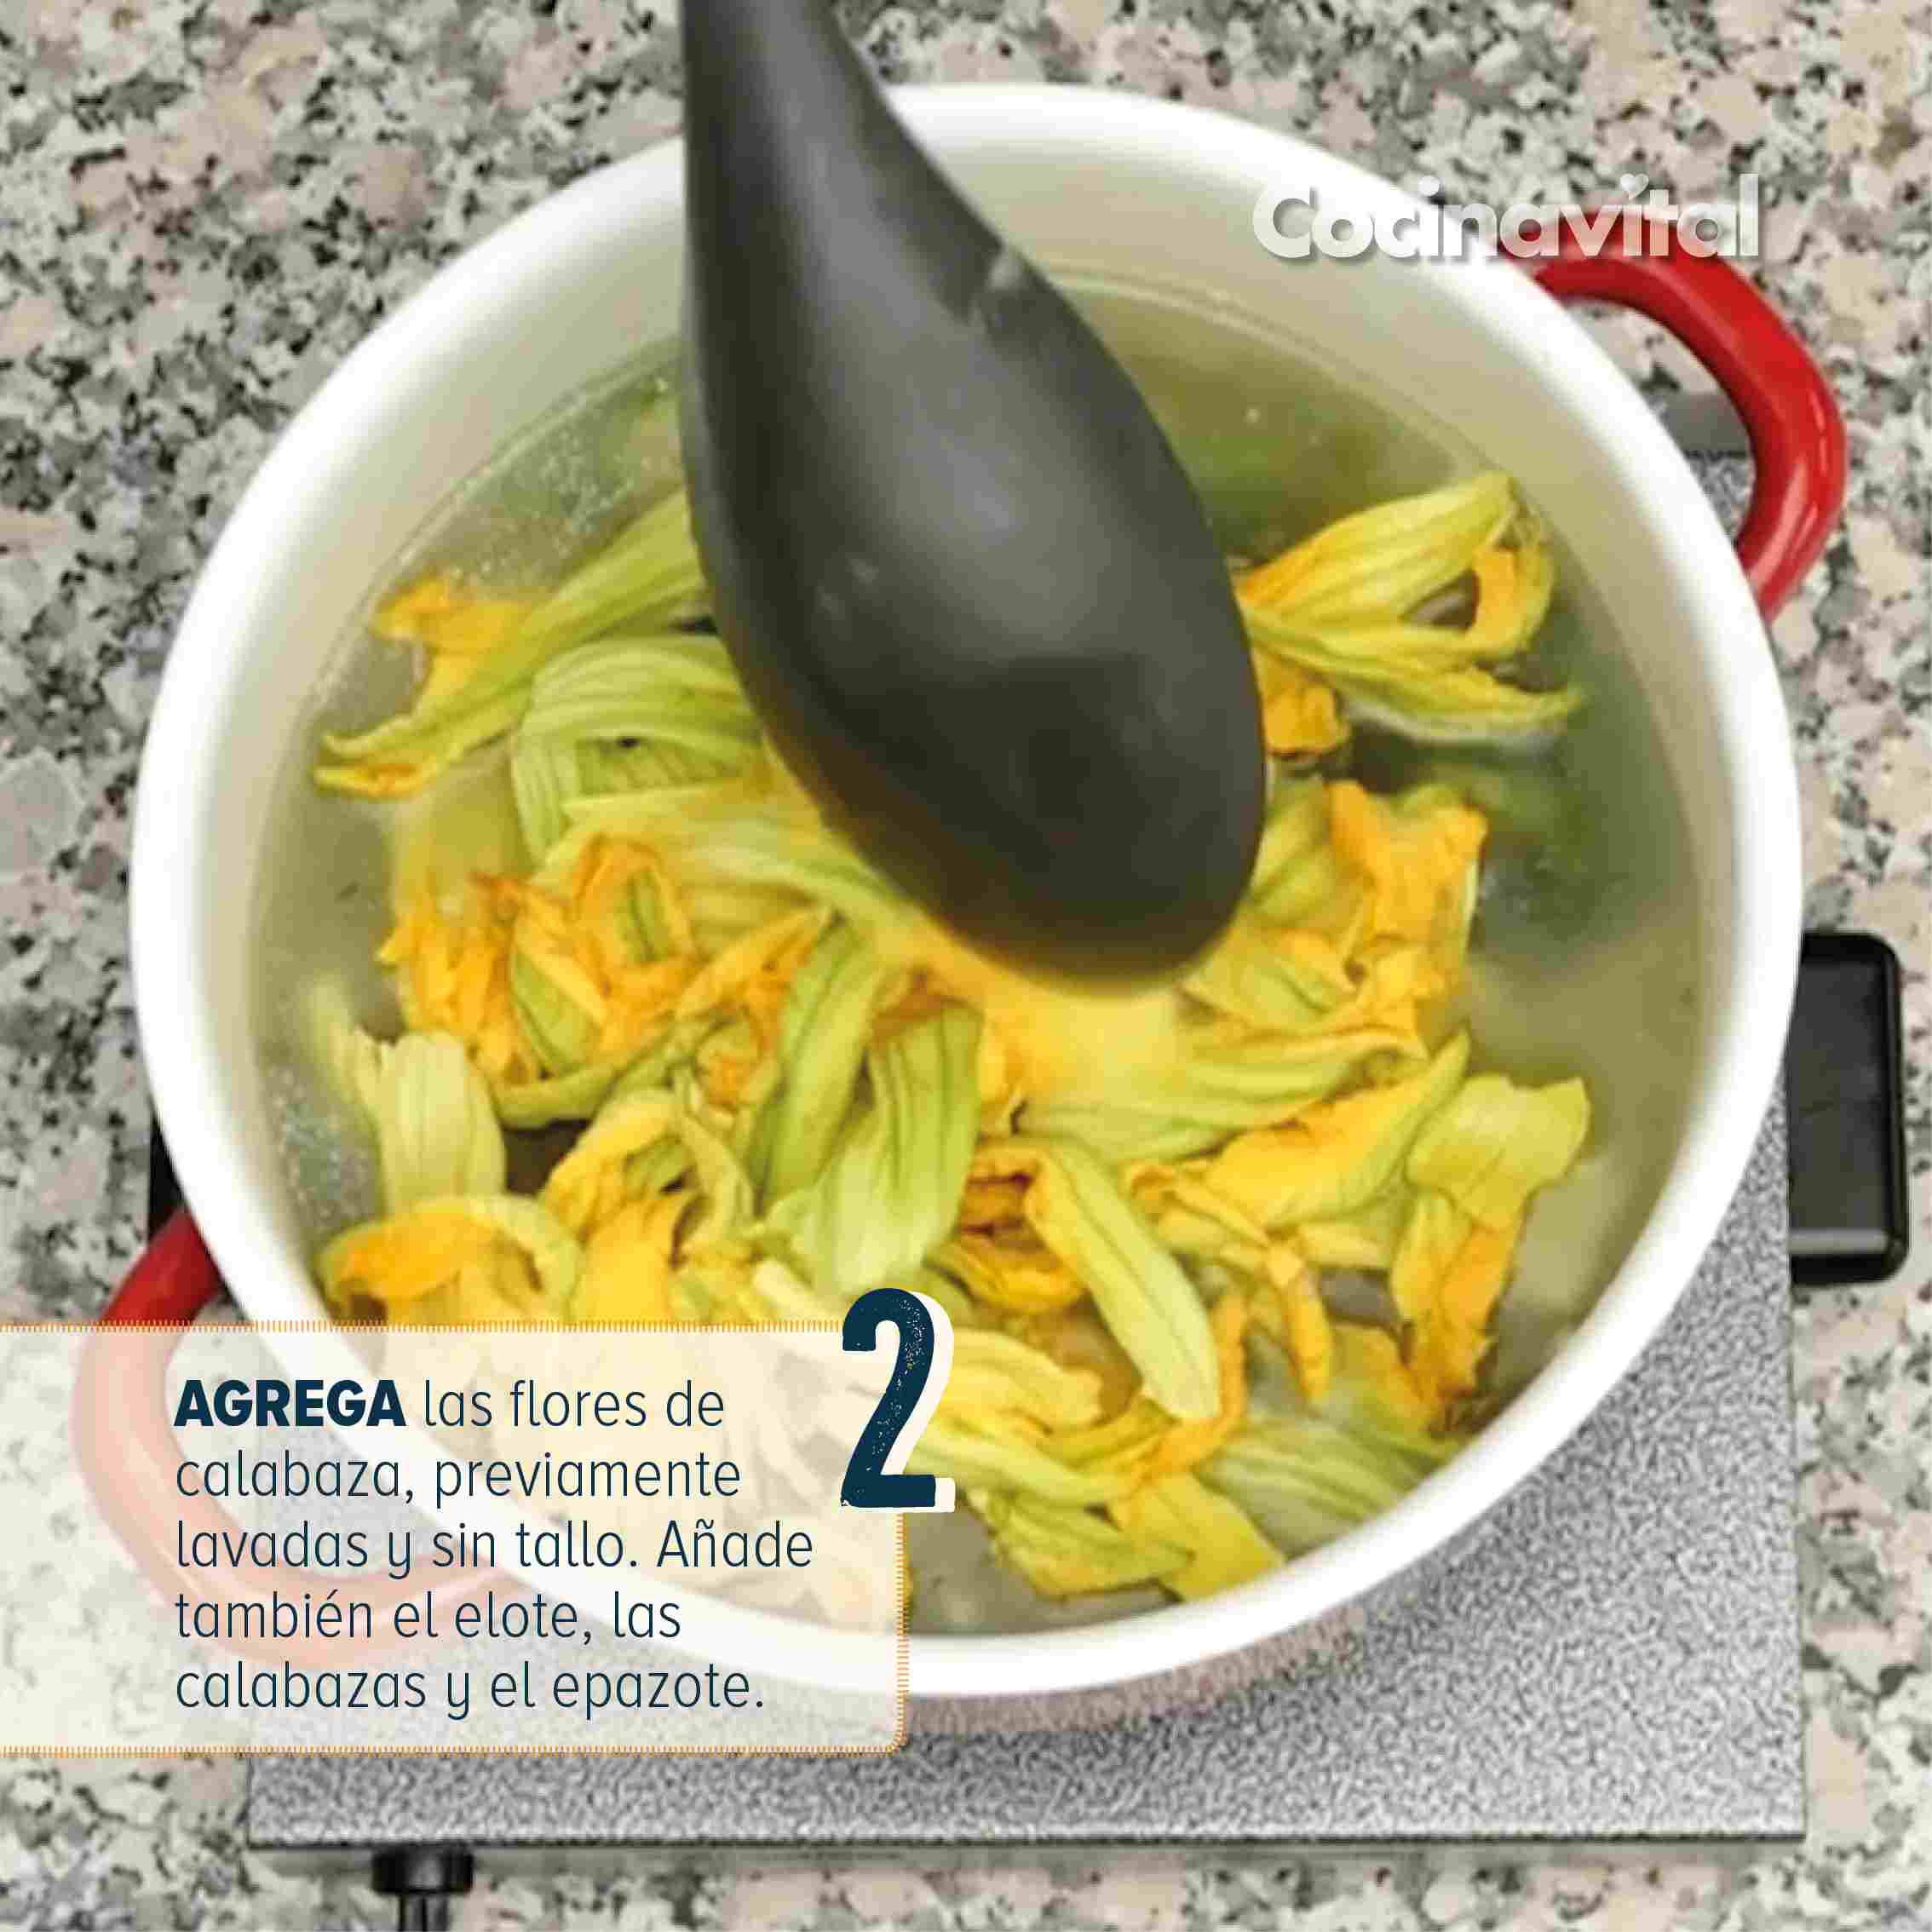 Sigue la receta y prepara sopa de la milpa